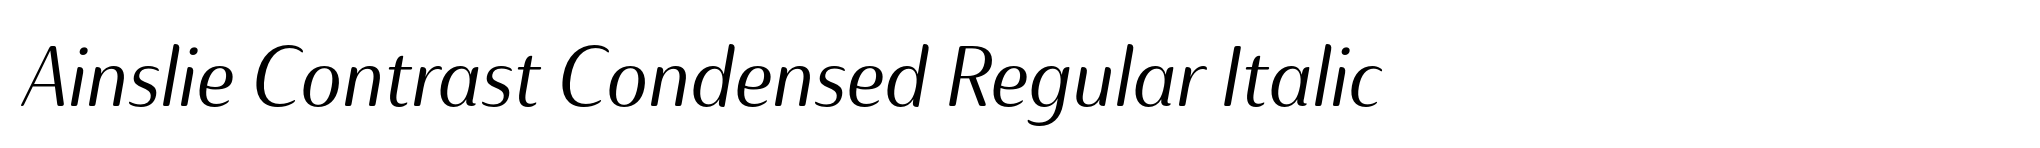 Ainslie Contrast Condensed Regular Italic image